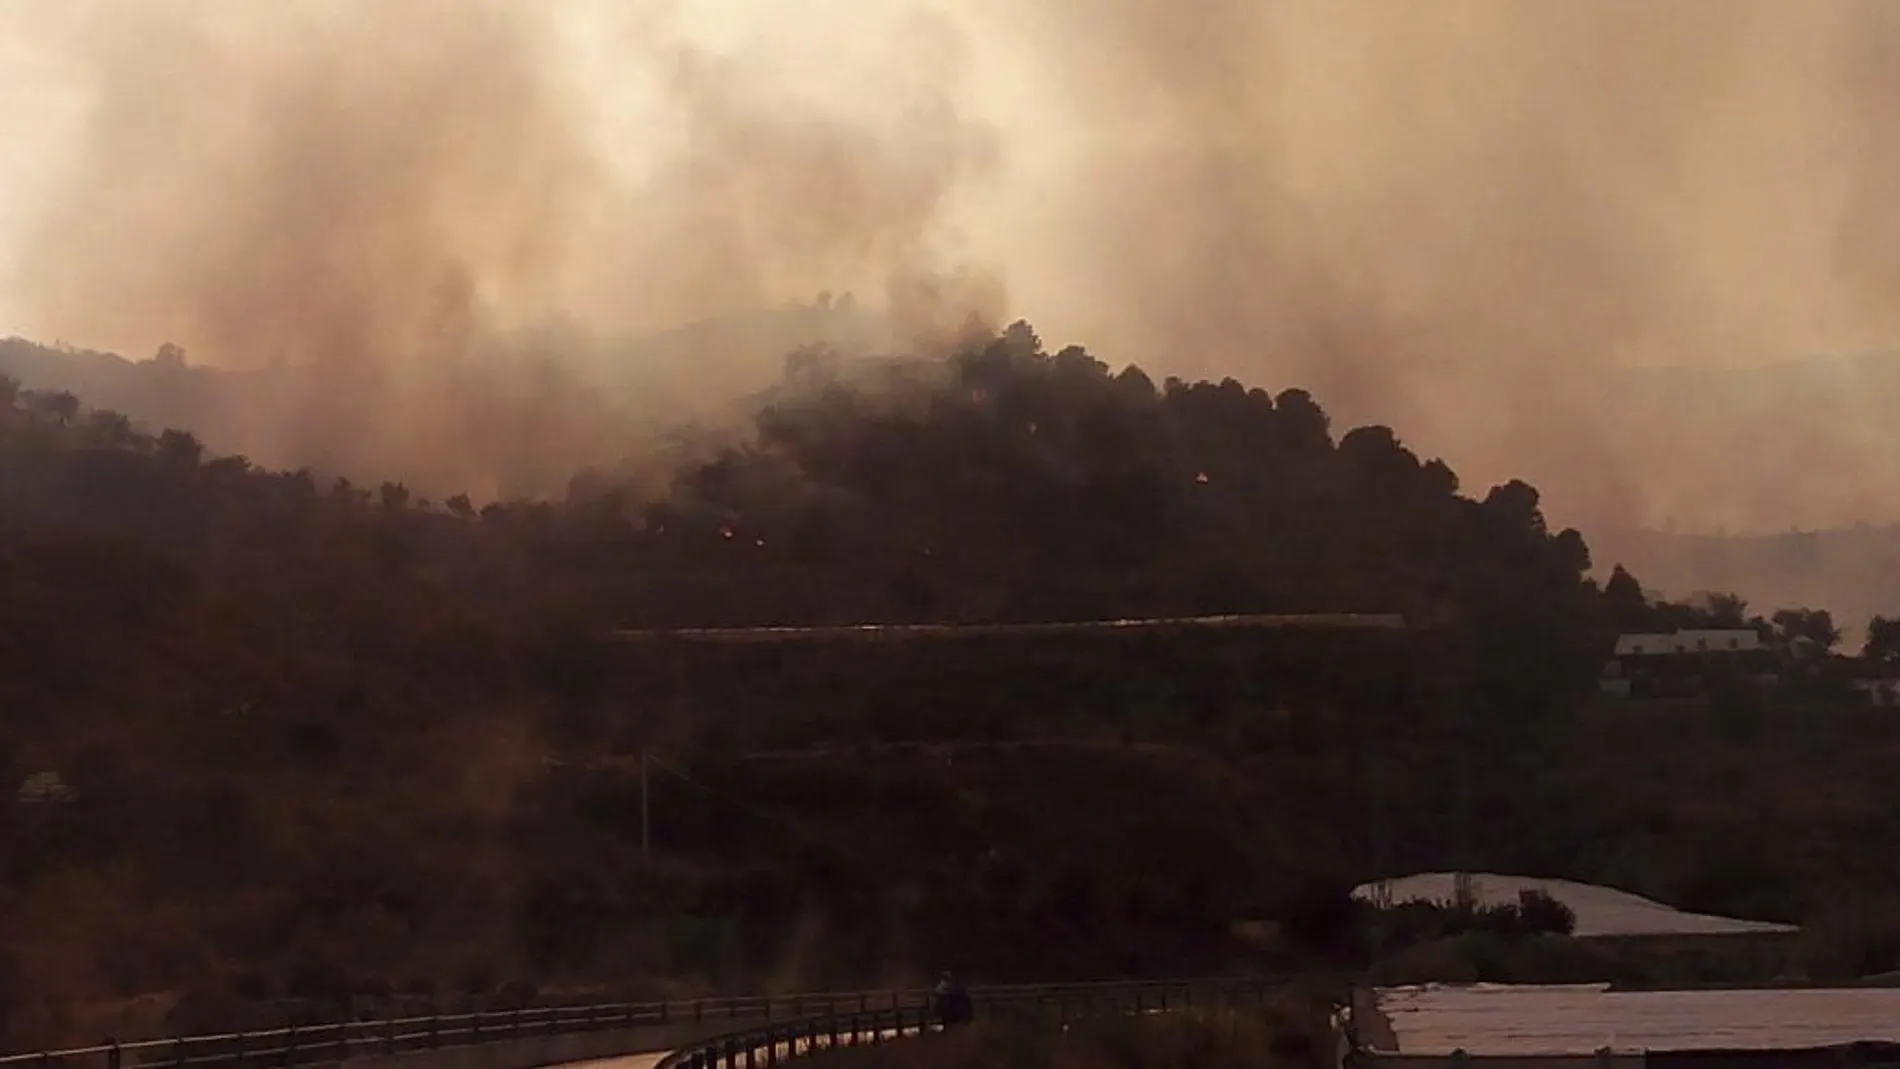 El incendio forestal declarado en un alcornocal entre los términos municipales de Gualchos y Lújar